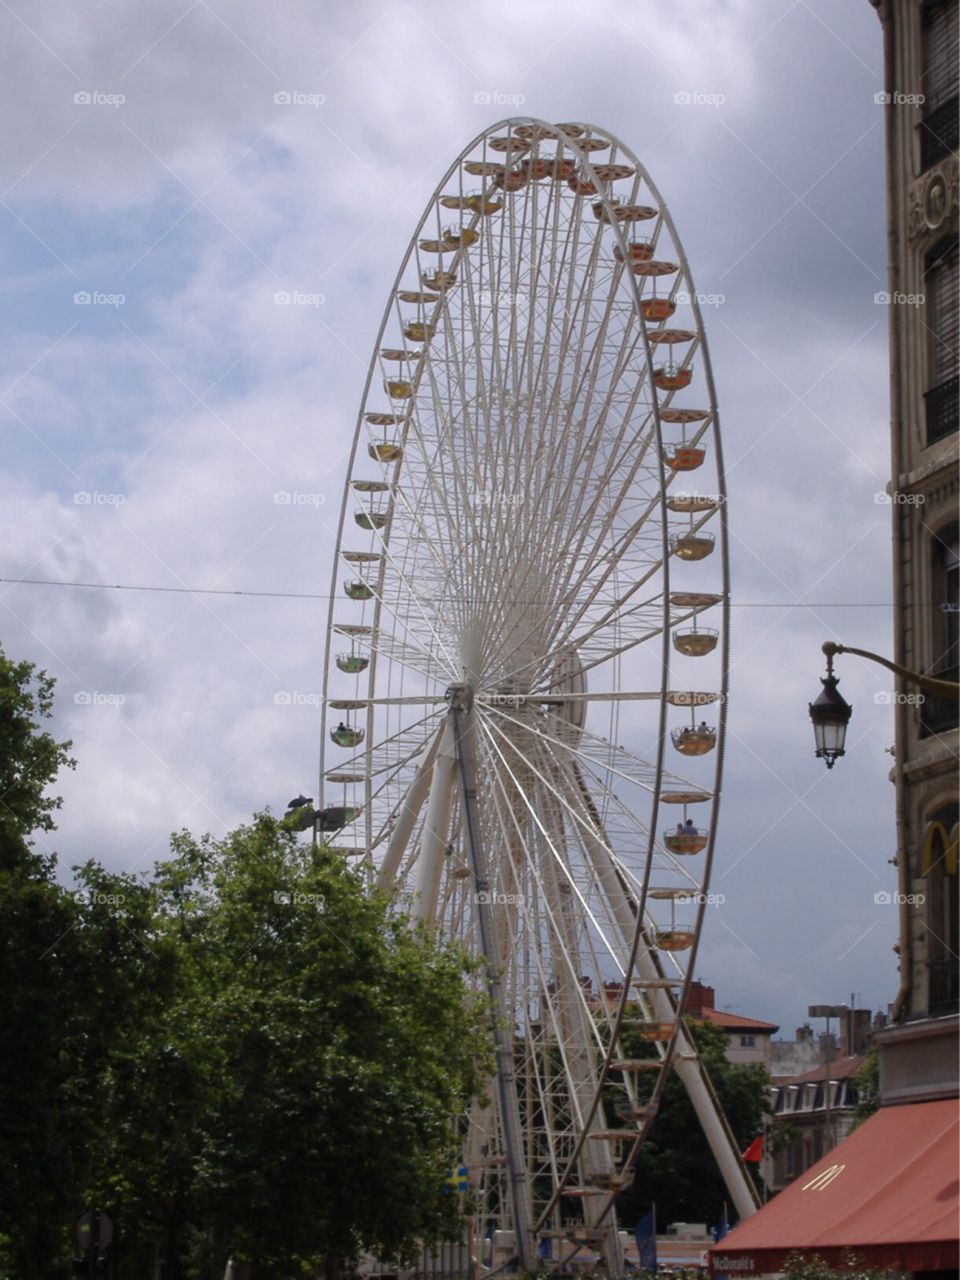 Giant Ferris Wheel in plaza. Lyon, France. 